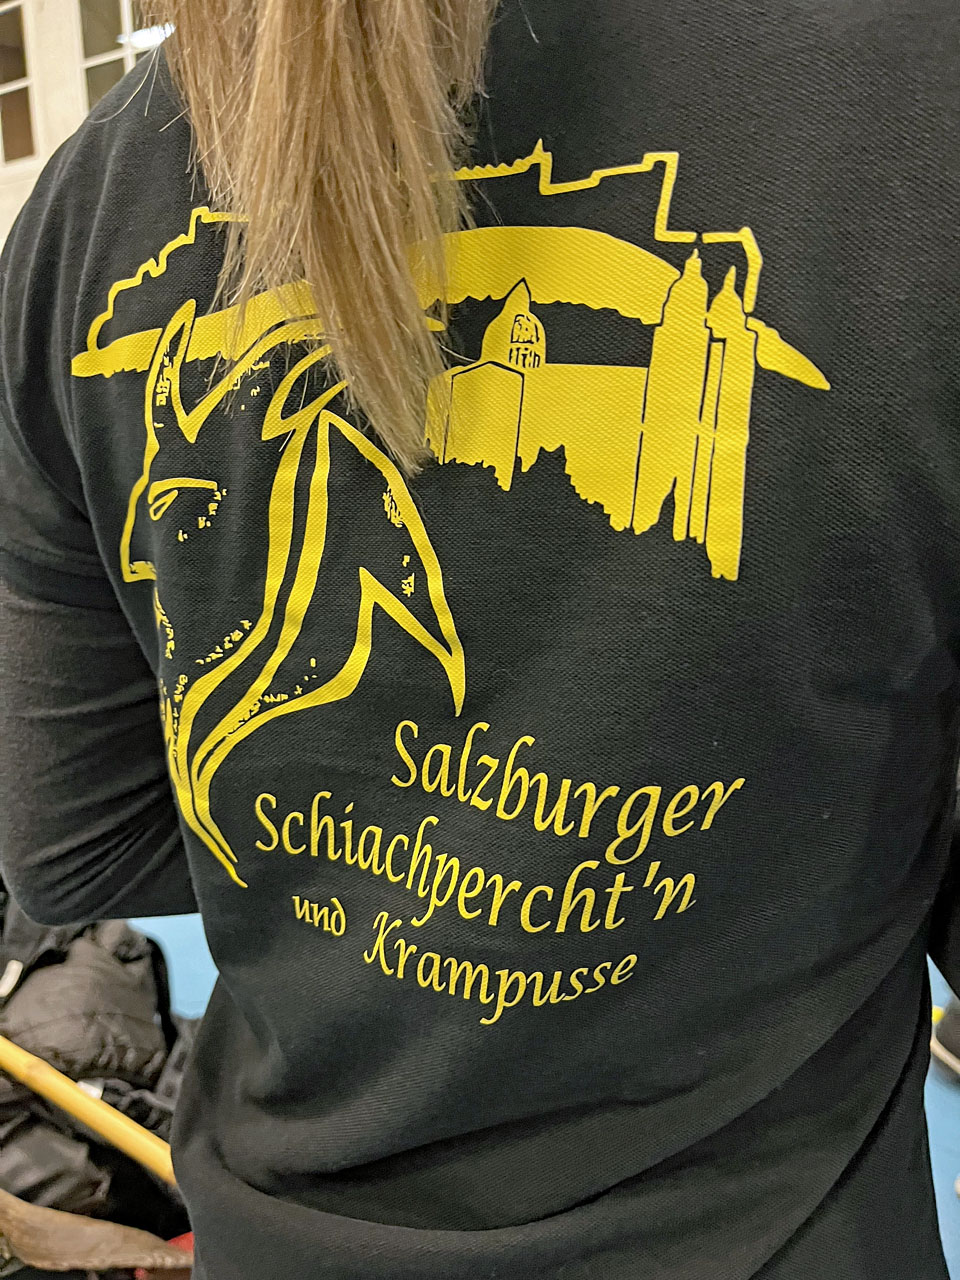 Jubiläumslauf der Radecker Pass, 25. 11. 23 in Bergheim | Salzburger Schiachpercht'n und Krampusse